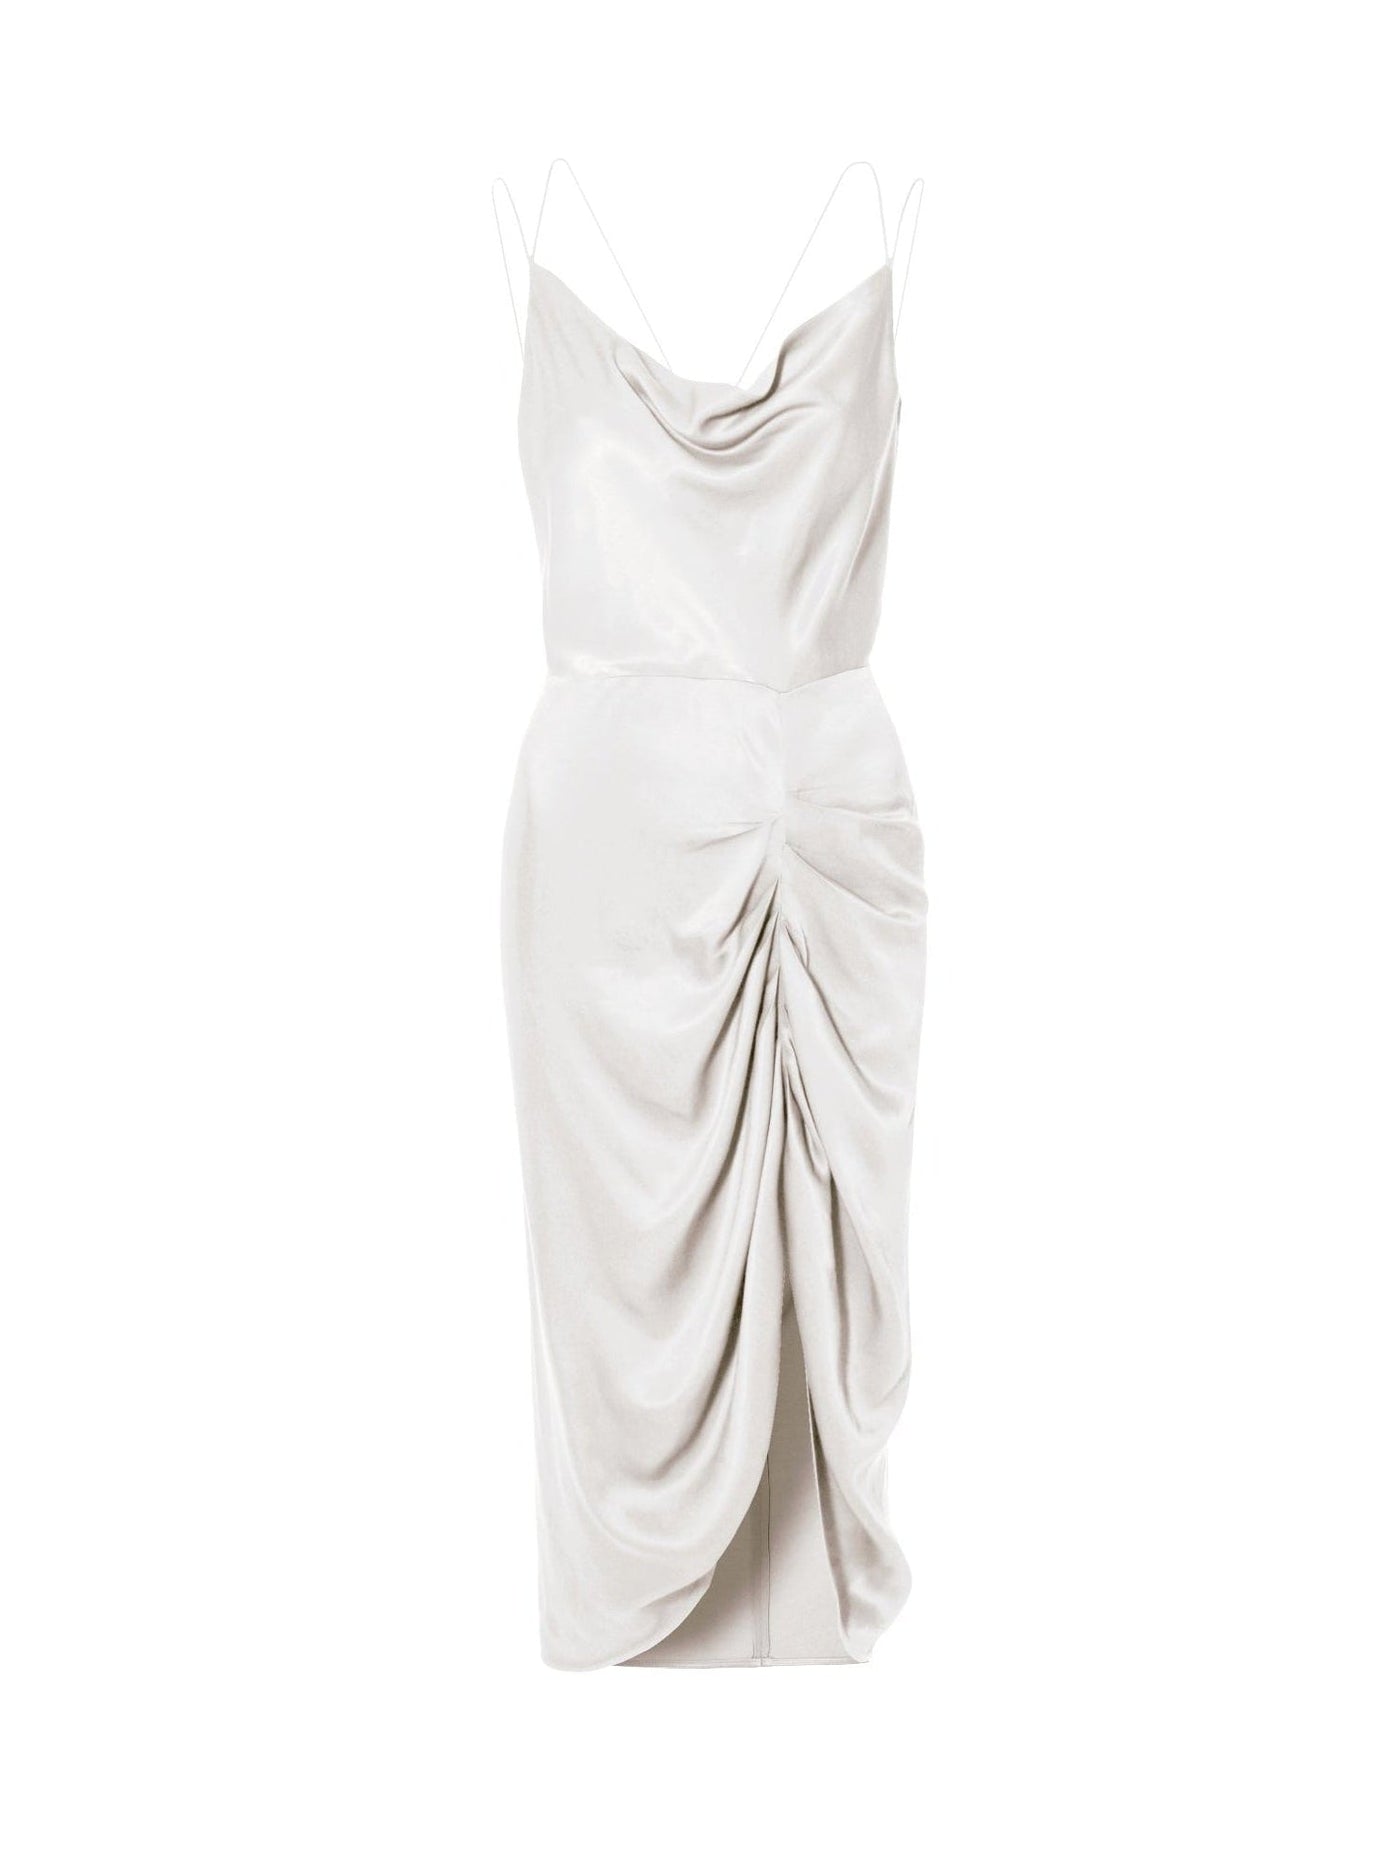 Ava Bright White Dress